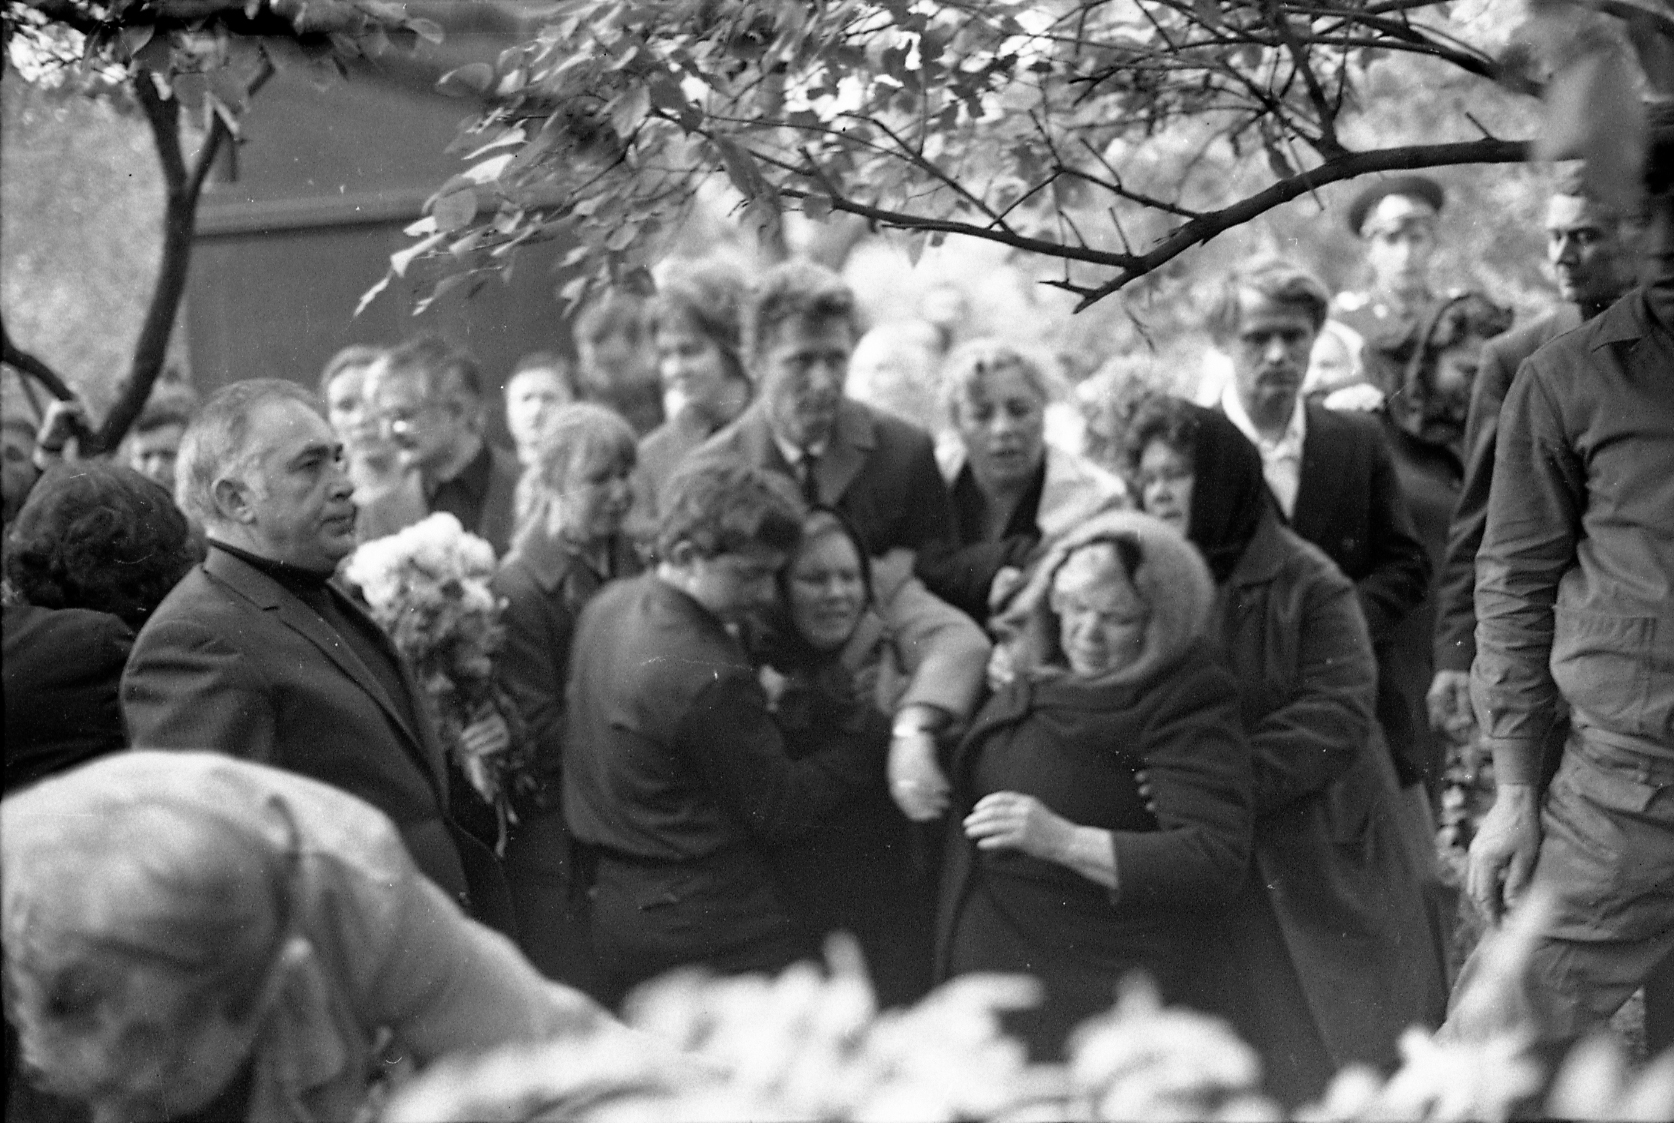 Похороны 7 октября 1974 года в Москве на Новодевичьем кладбище. На фото: Вадим Юсов, Марлен Хуциев, Сергей Никоненко, Александр Саранцев, Ренита Григорьева.